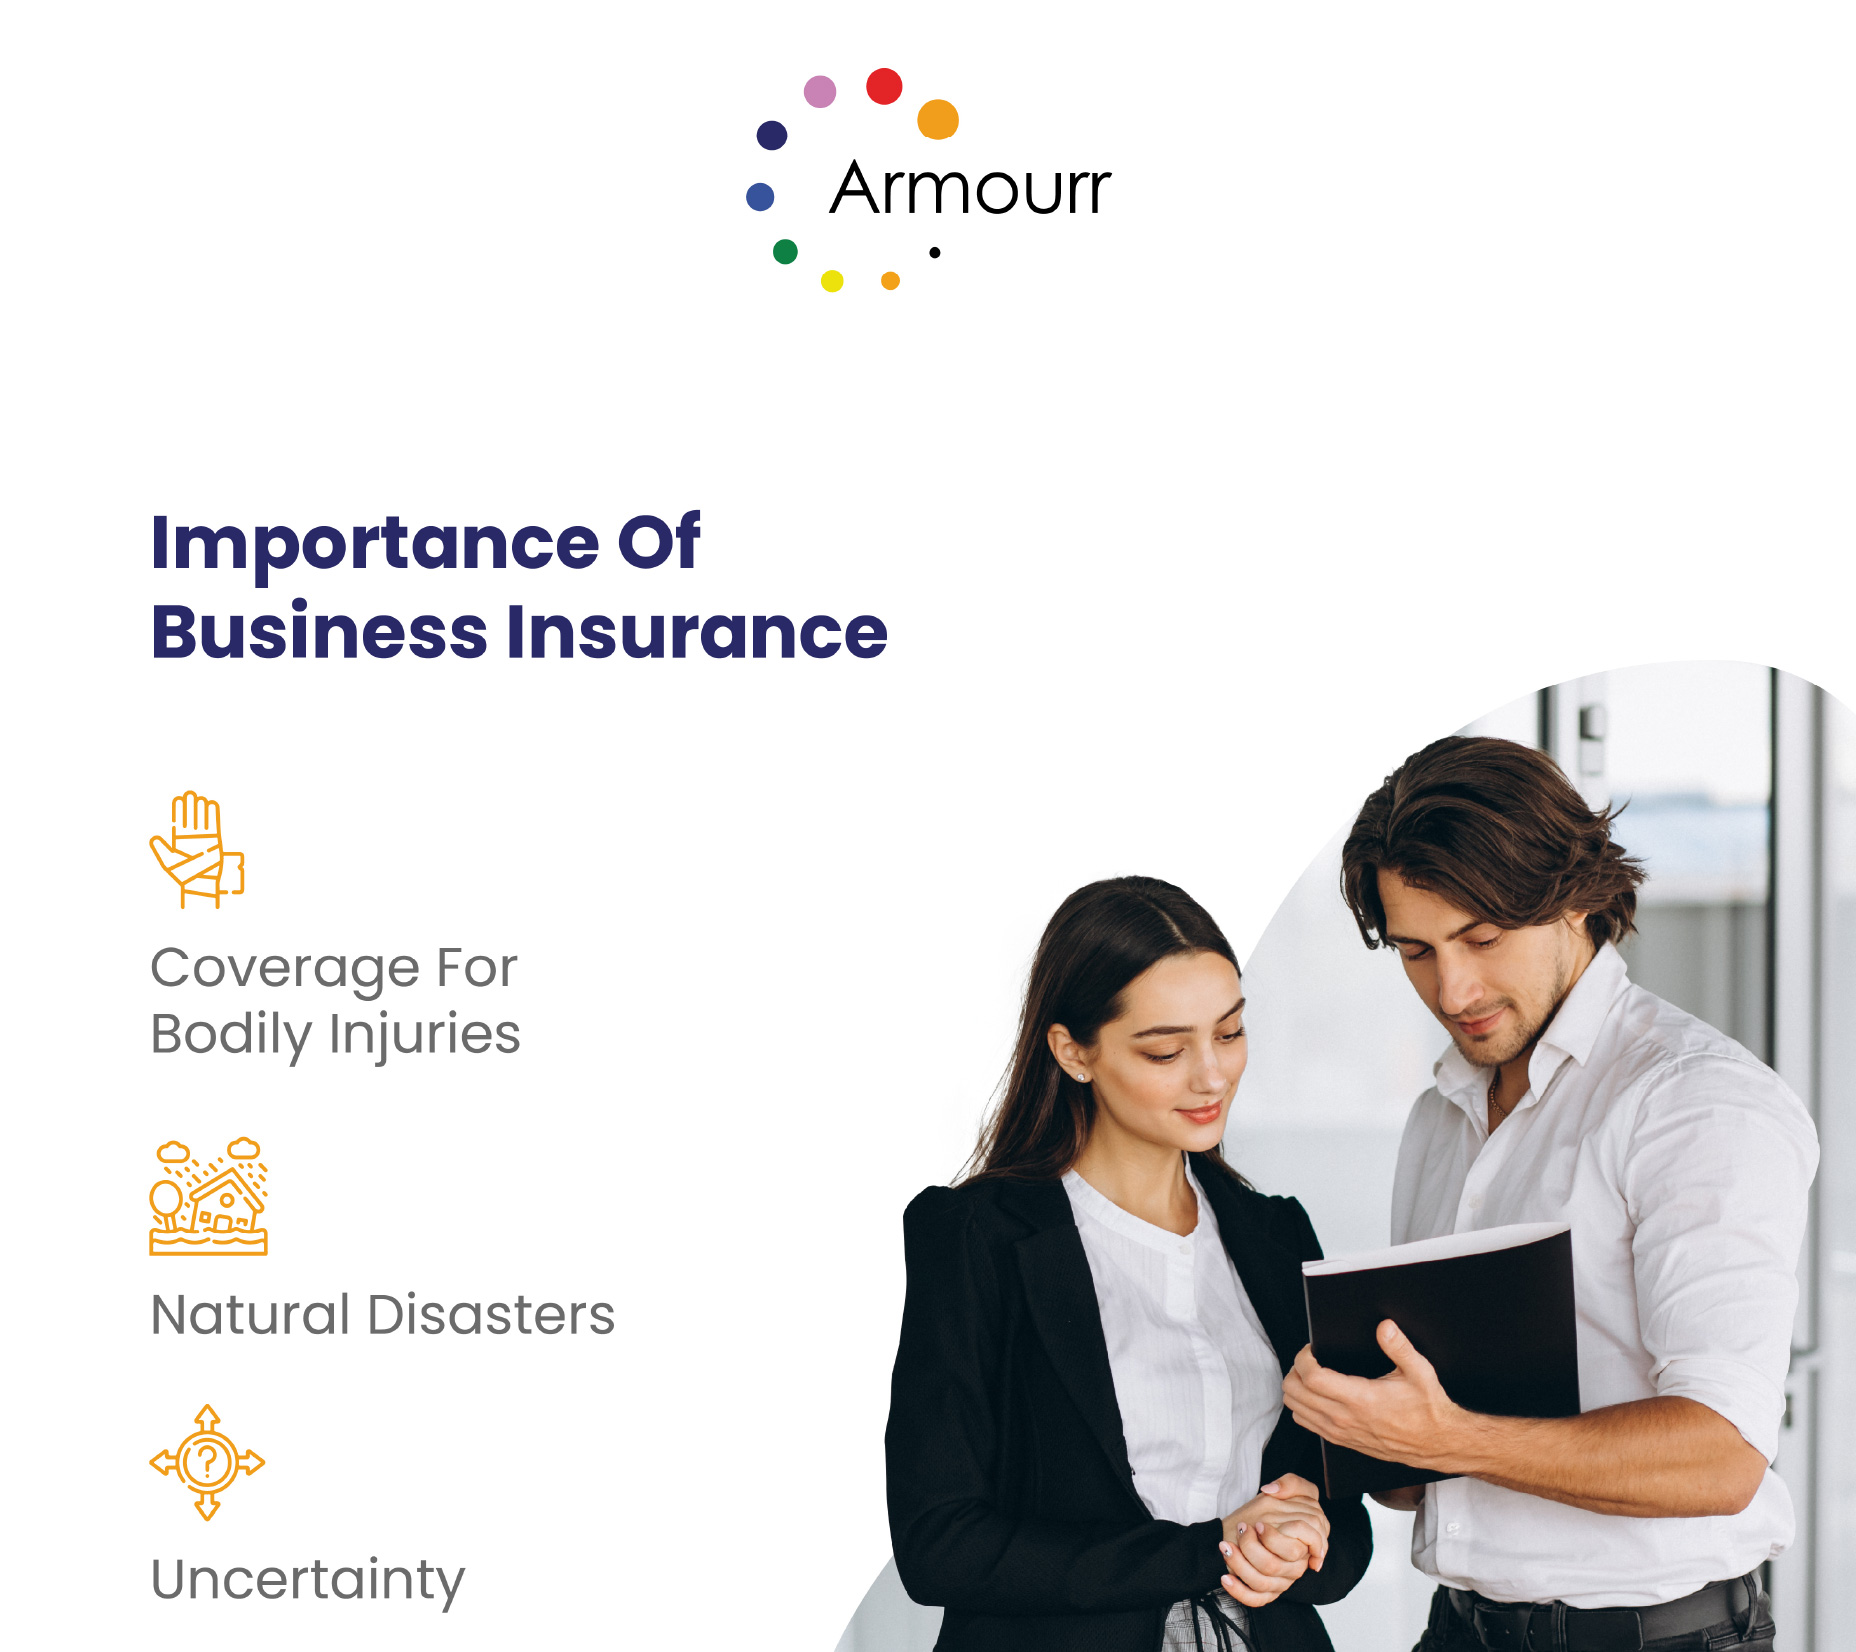 Armourr Insurance